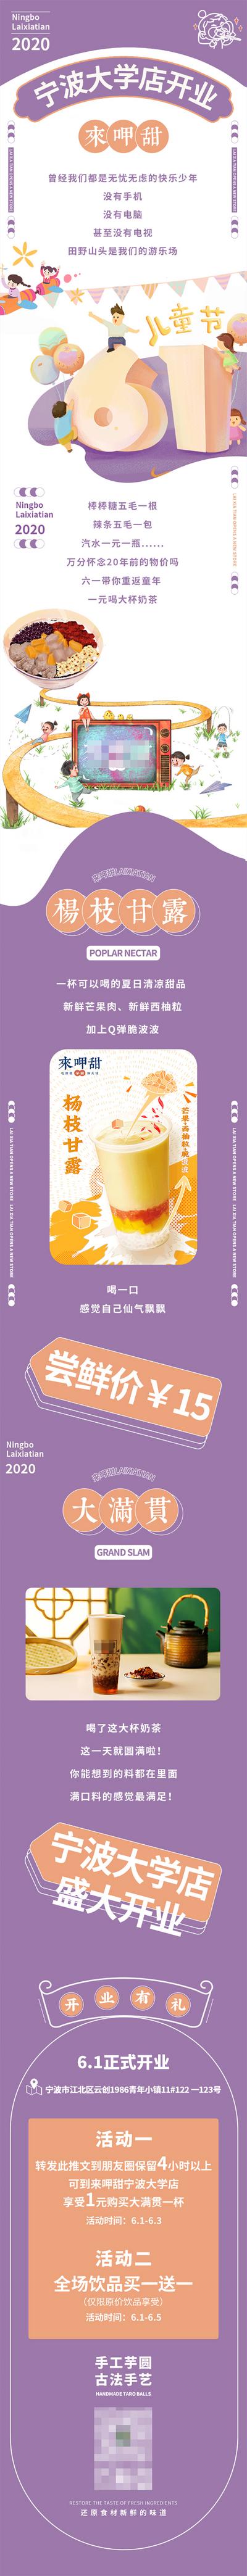 南门网 海报 长图  公历节日  六一  开业   饮料  奶茶  简约 大气 时尚 插画